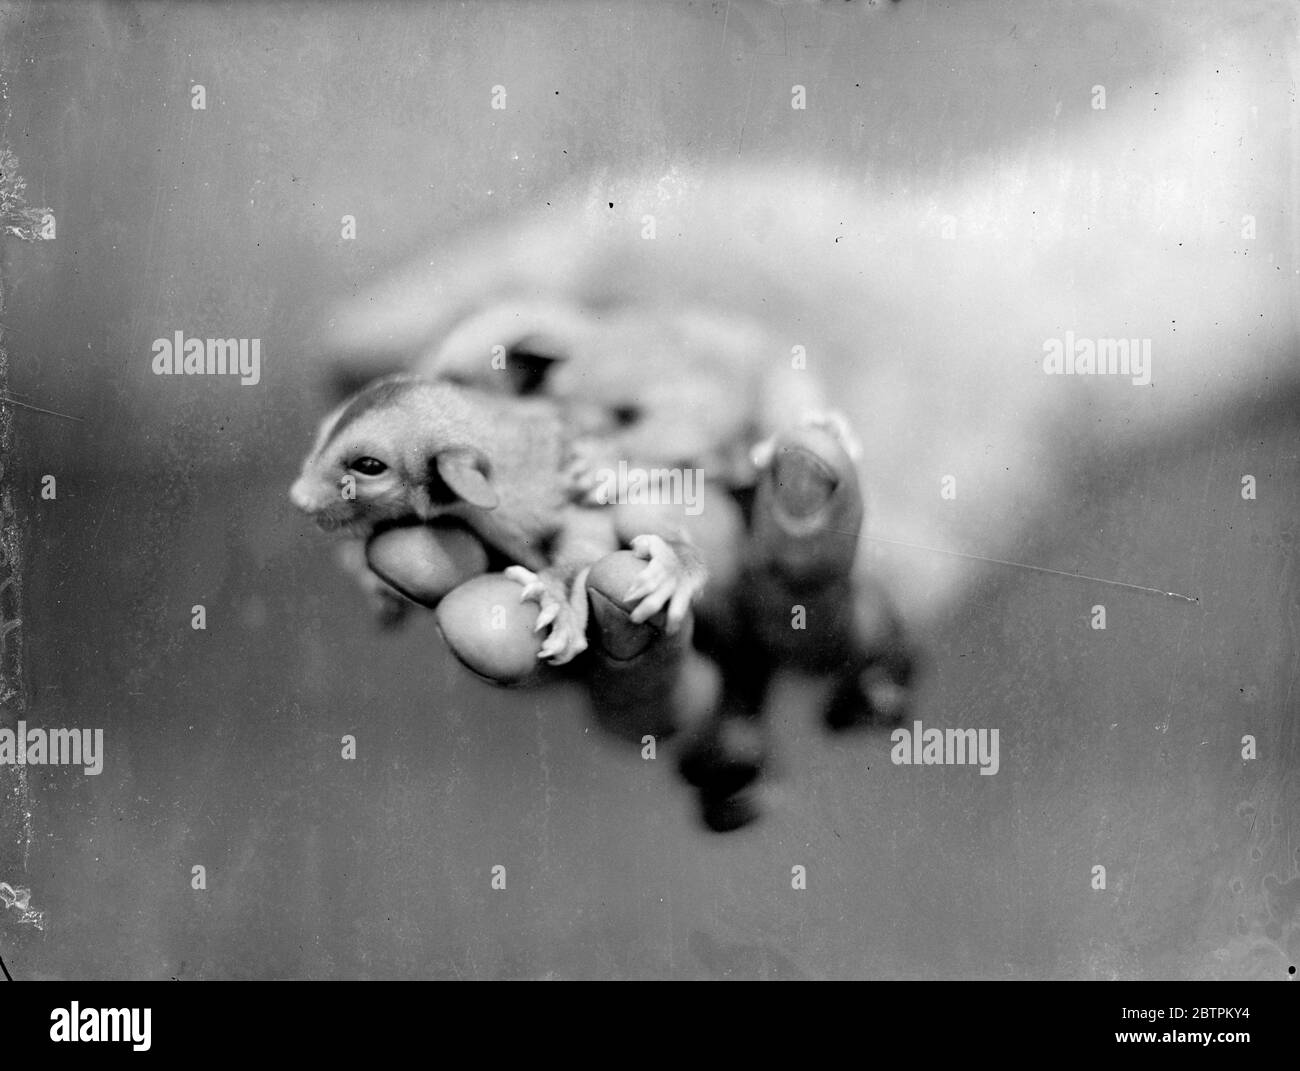 Die Verwendung von Mutter . Baby Flying Opossum sind erstmals im London Zoo zu finden. Zwei kleine hellgraue Pelzbündel mit großen dunklen Augen in einem kleinen spitzen Gesicht gesetzt haben gerade ihren Auftritt im "Nagetierhaus" des London Zoo gemacht. Sie sind fliegende Opossum , die, wenn sie voll gewachsen wird etwa drei Viertel der Größe des gemeinsamen grauen Eichhörnchen sein . Geboren erst vor wenigen Wochen, haben sich die Babys gerade in der Öffentlichkeit gezeigt. Der fliegende Opossum, der seine Jungen in einem Beutel wie ein Känguru trägt, kann von Baum zu Baum gleiten, indem er Membran zwischen ihren Hintern- und Vordergliedern verwendet. Foto sho Stockfoto